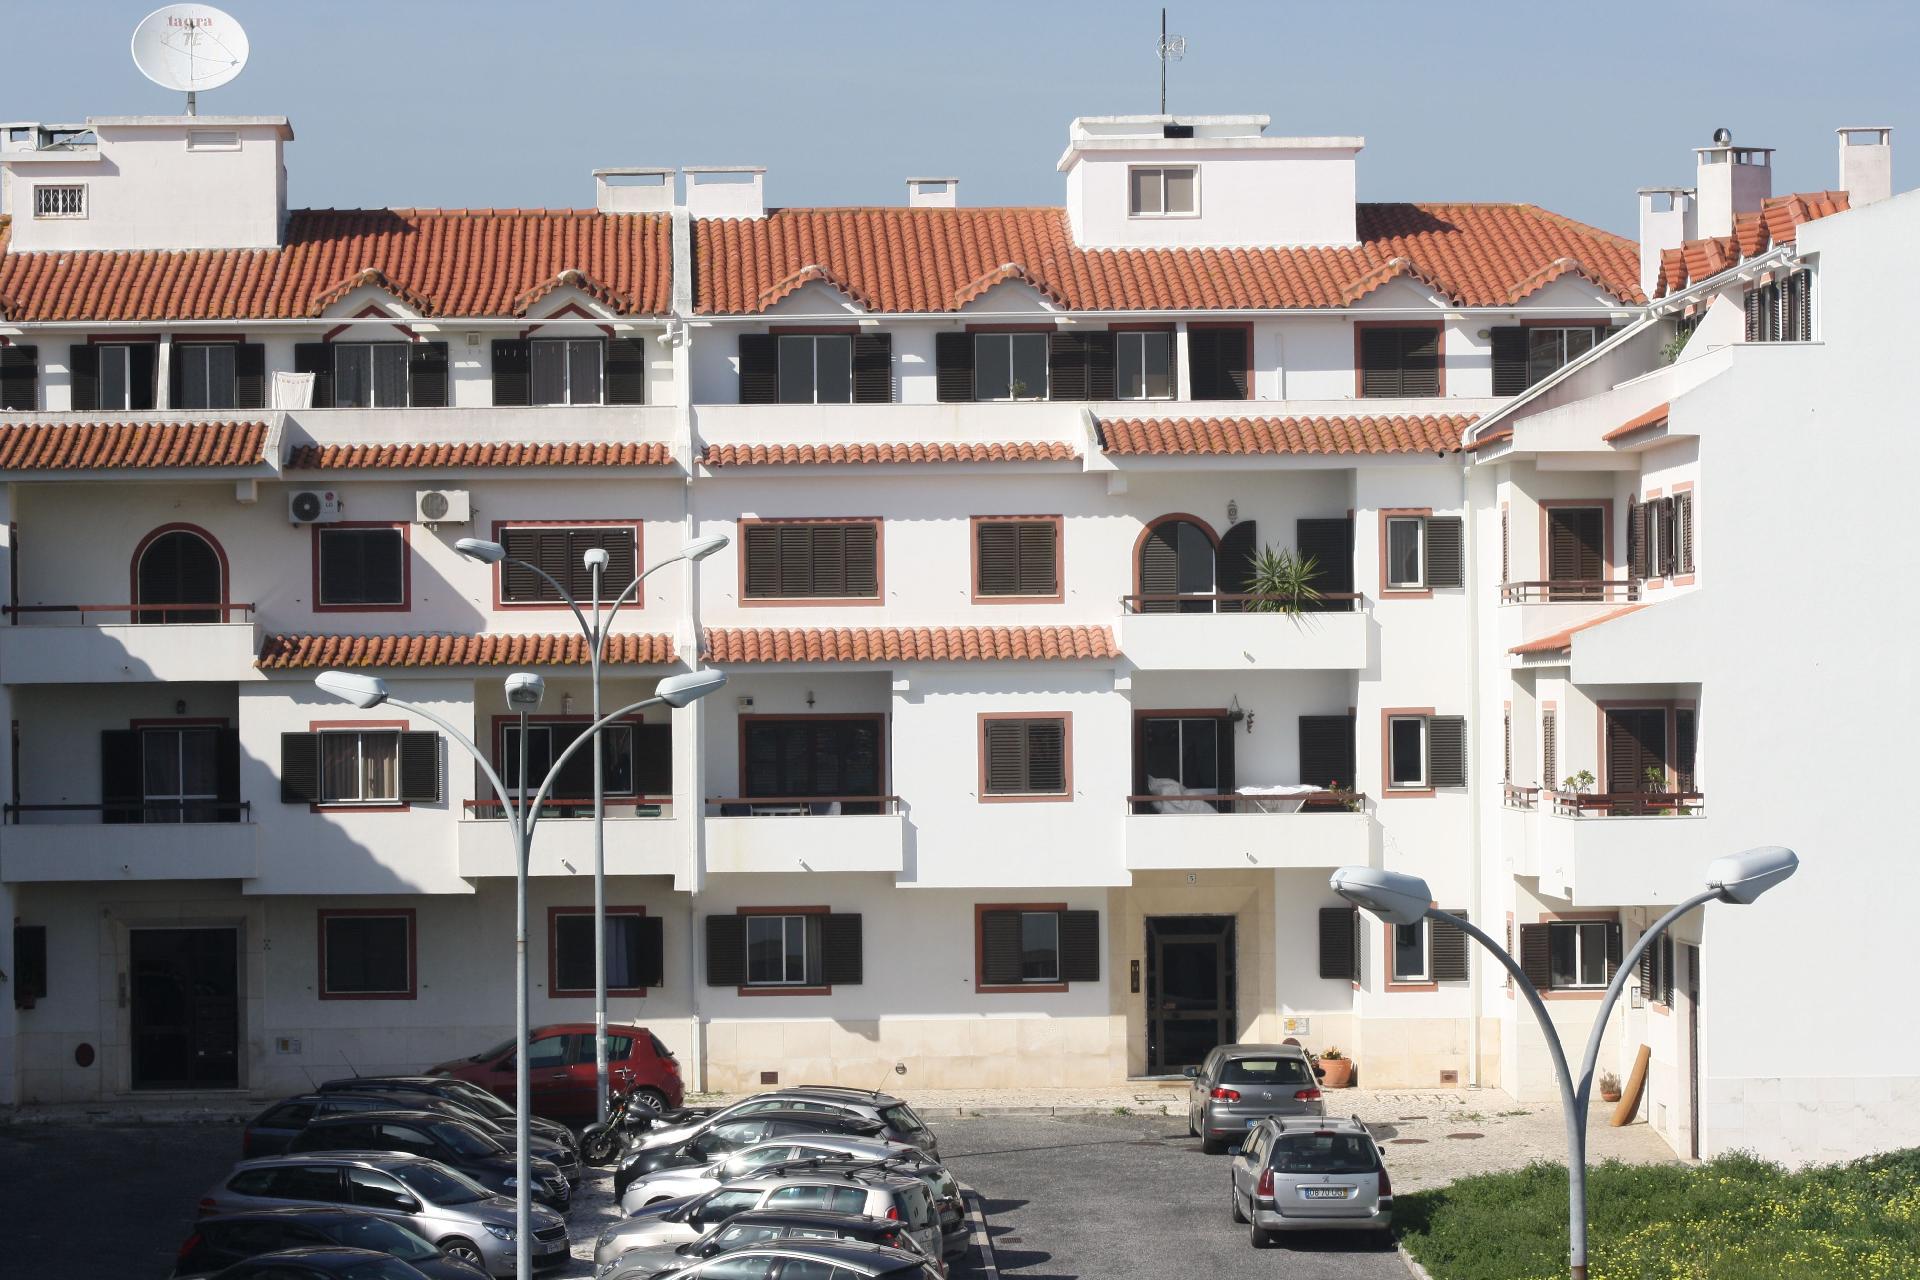 Ferienwohnung für 6 Personen ca. 100 m²  Ferienwohnung in Portugal